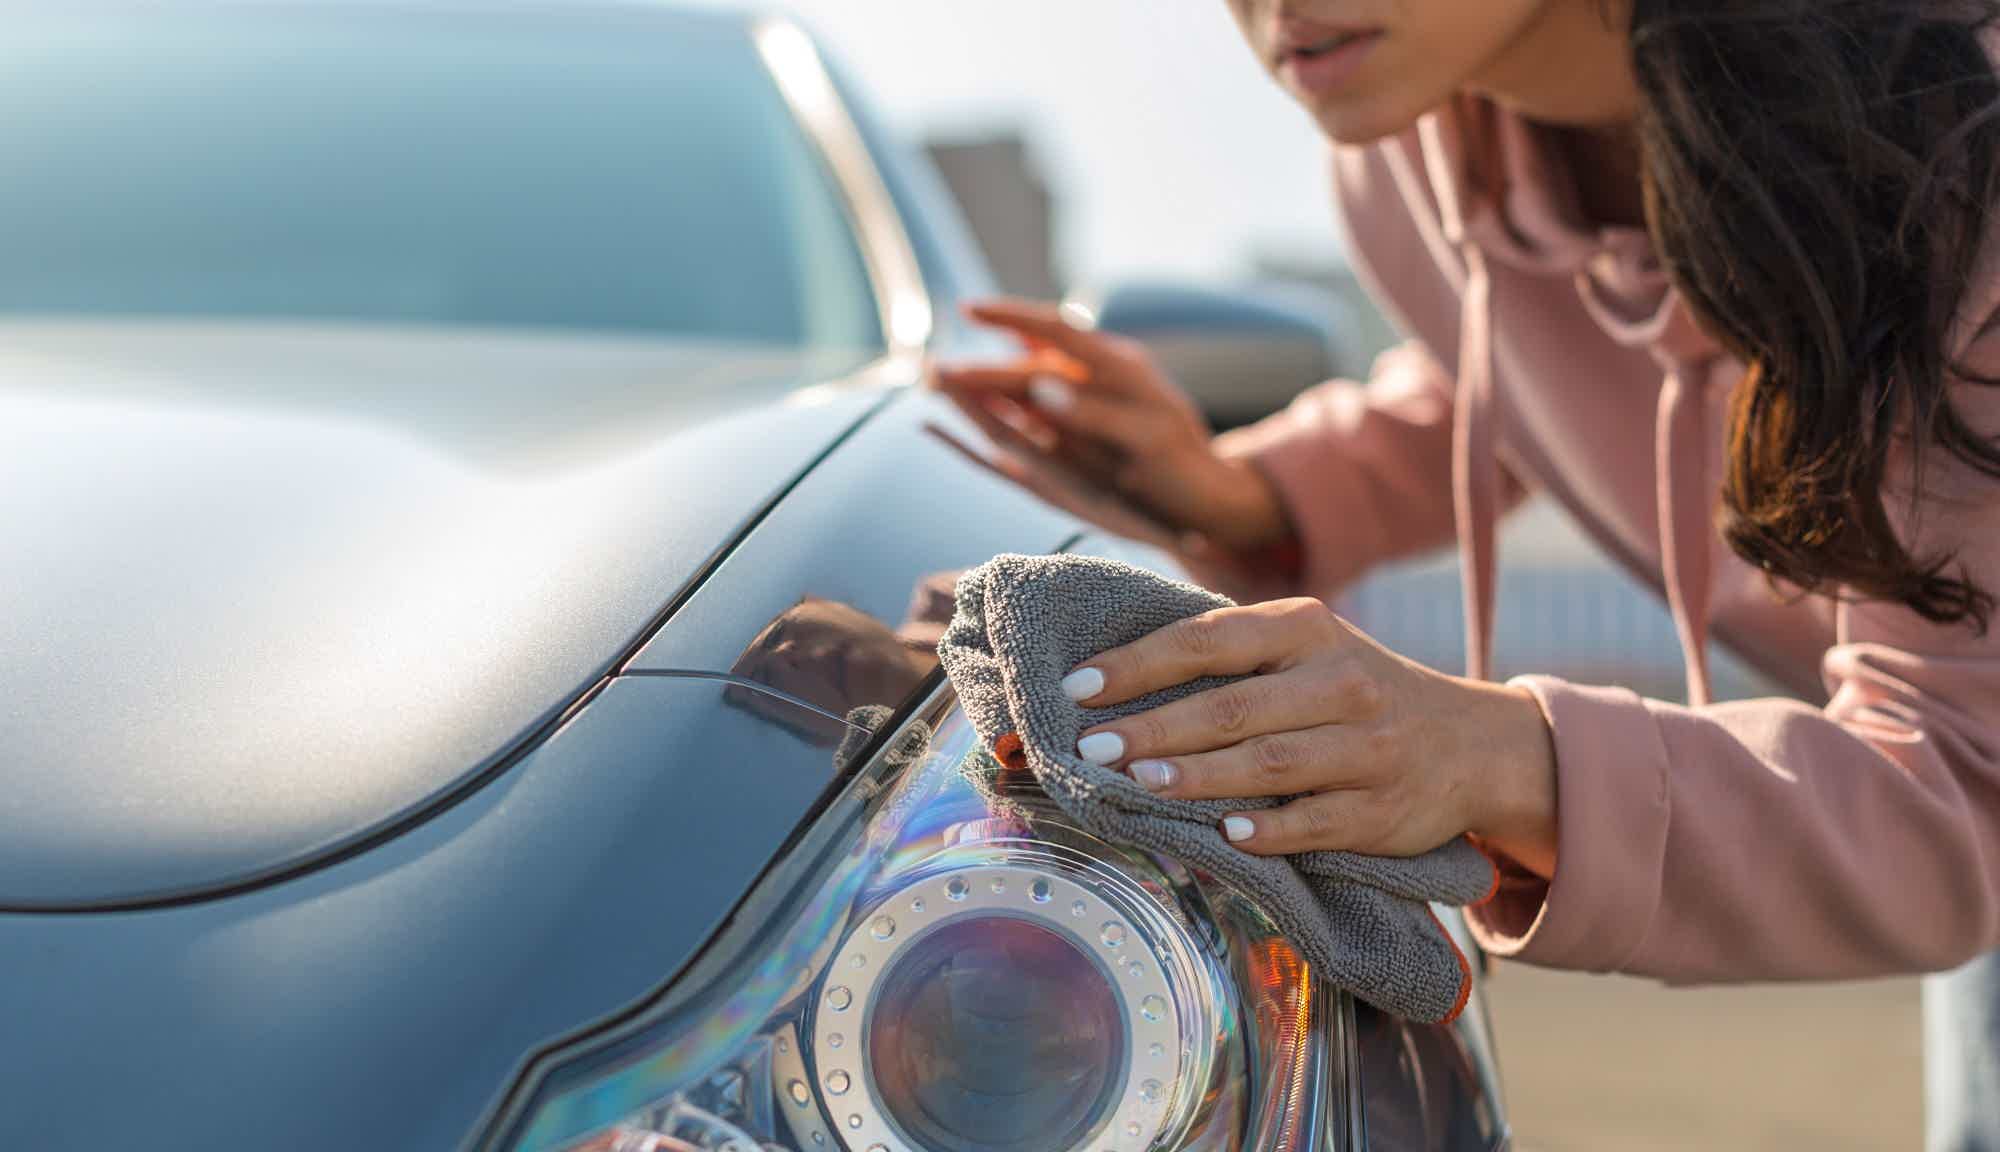 mulher limpando farol dianteiro do carro